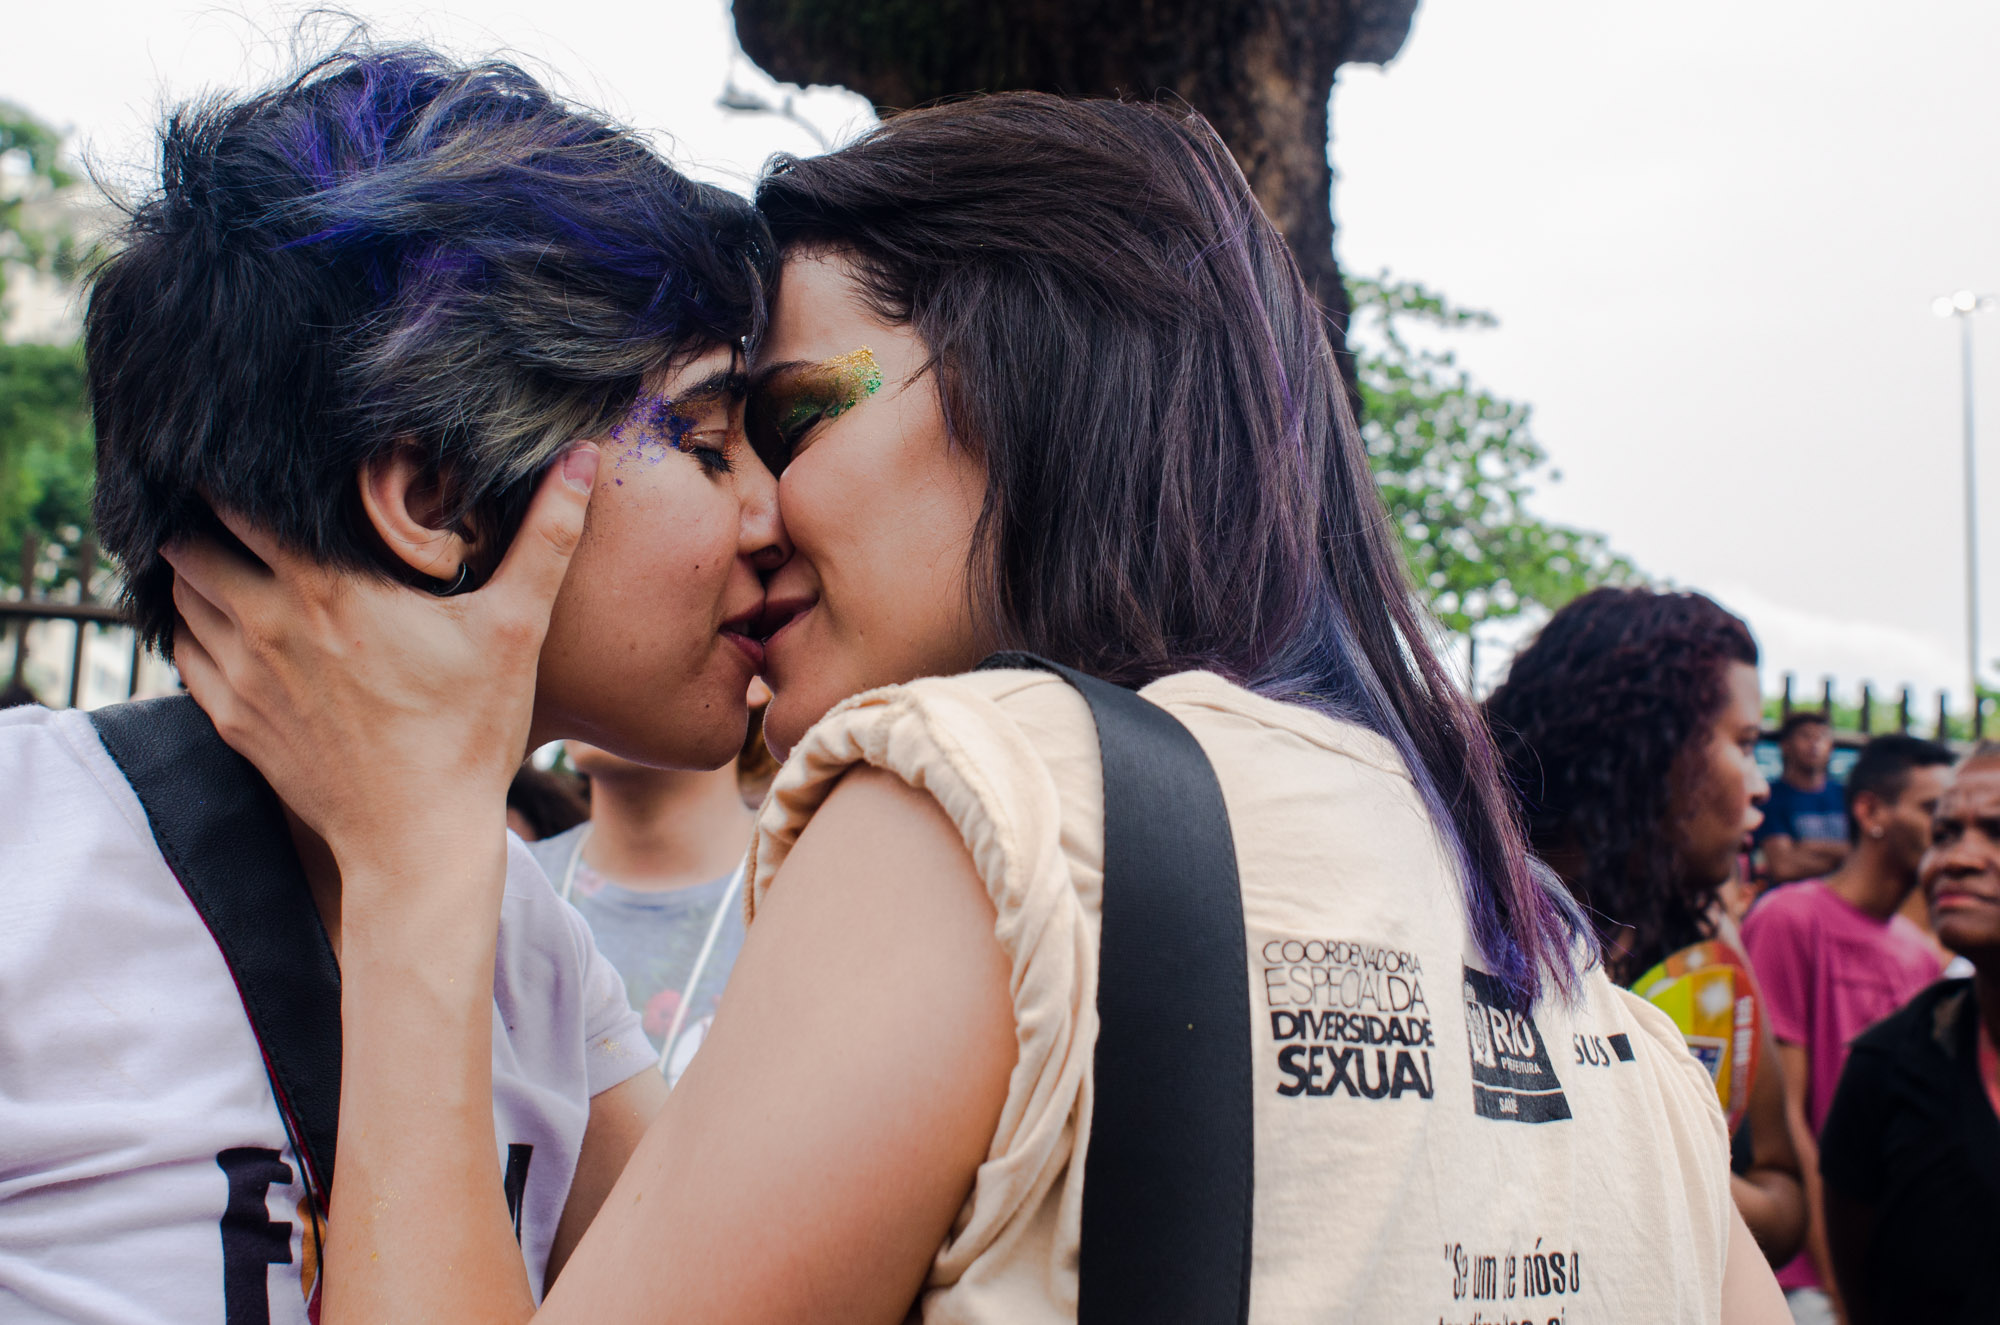 Parada LGBT colore ruas de Niterói; veja fotos